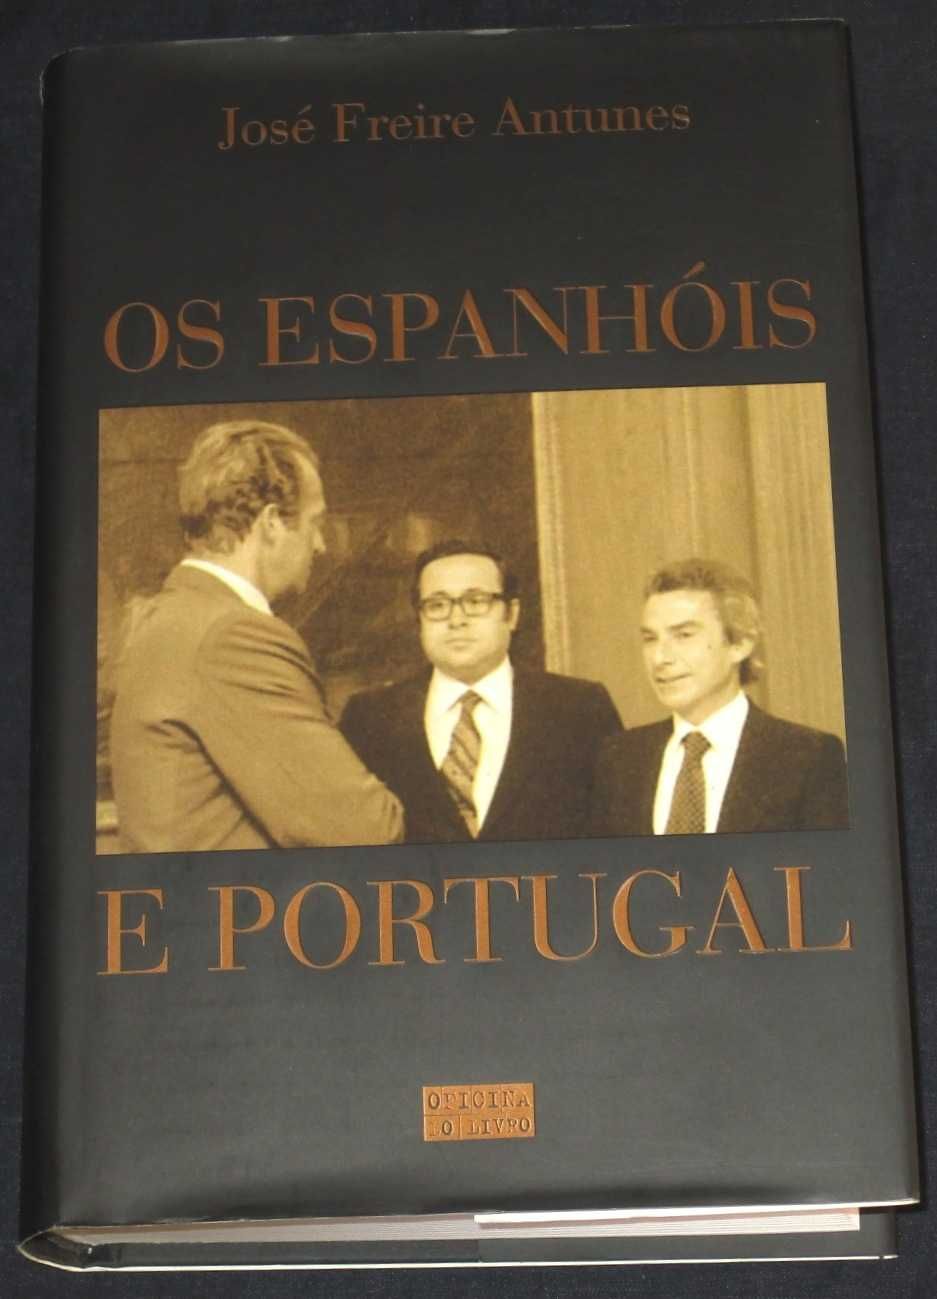 Livro Os Espanhóis e Portugal José Freire Antunes